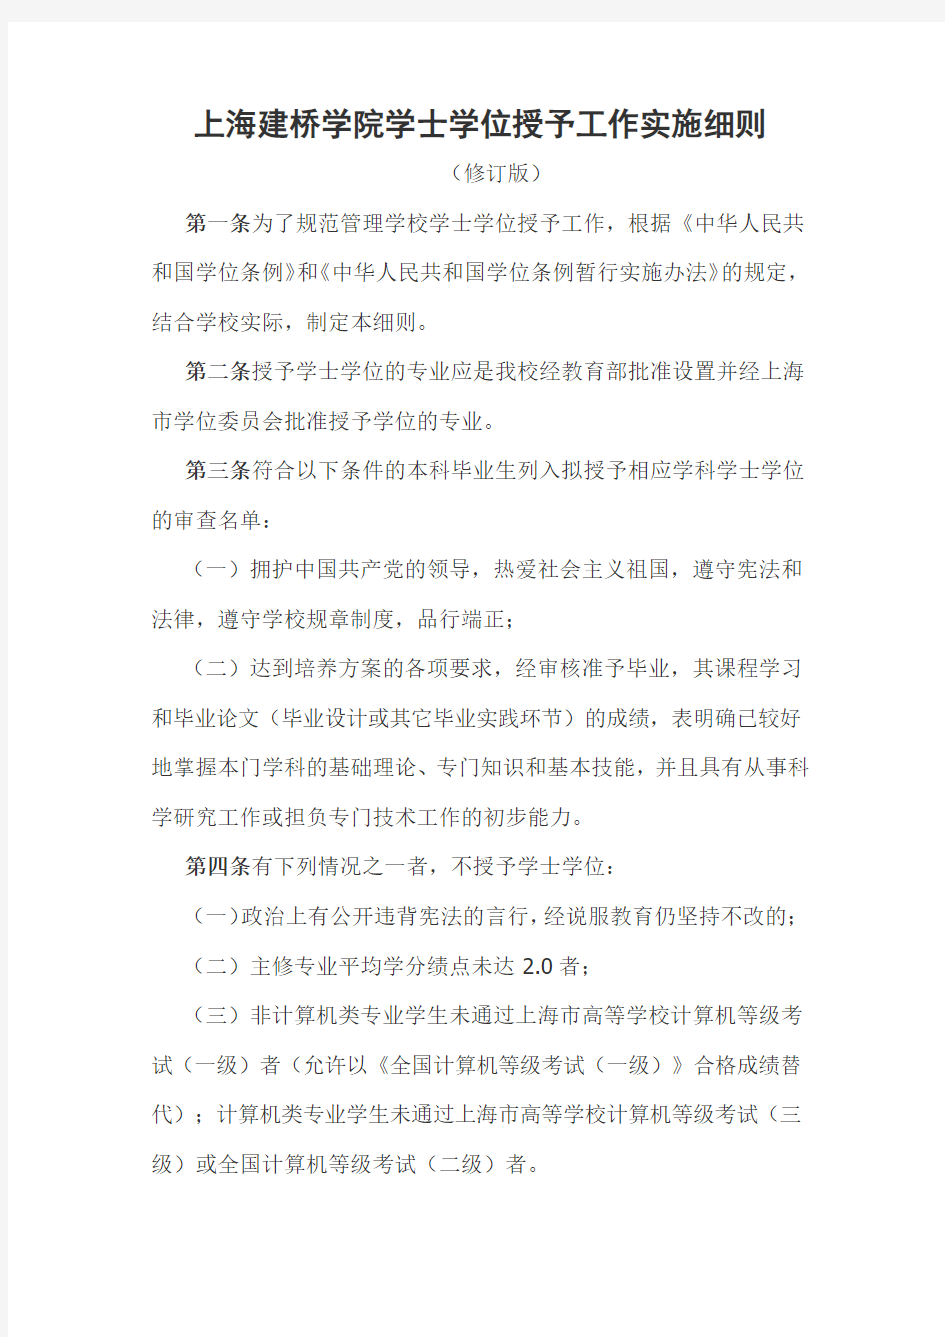 上海建桥学院学士学位授予工作实施细则